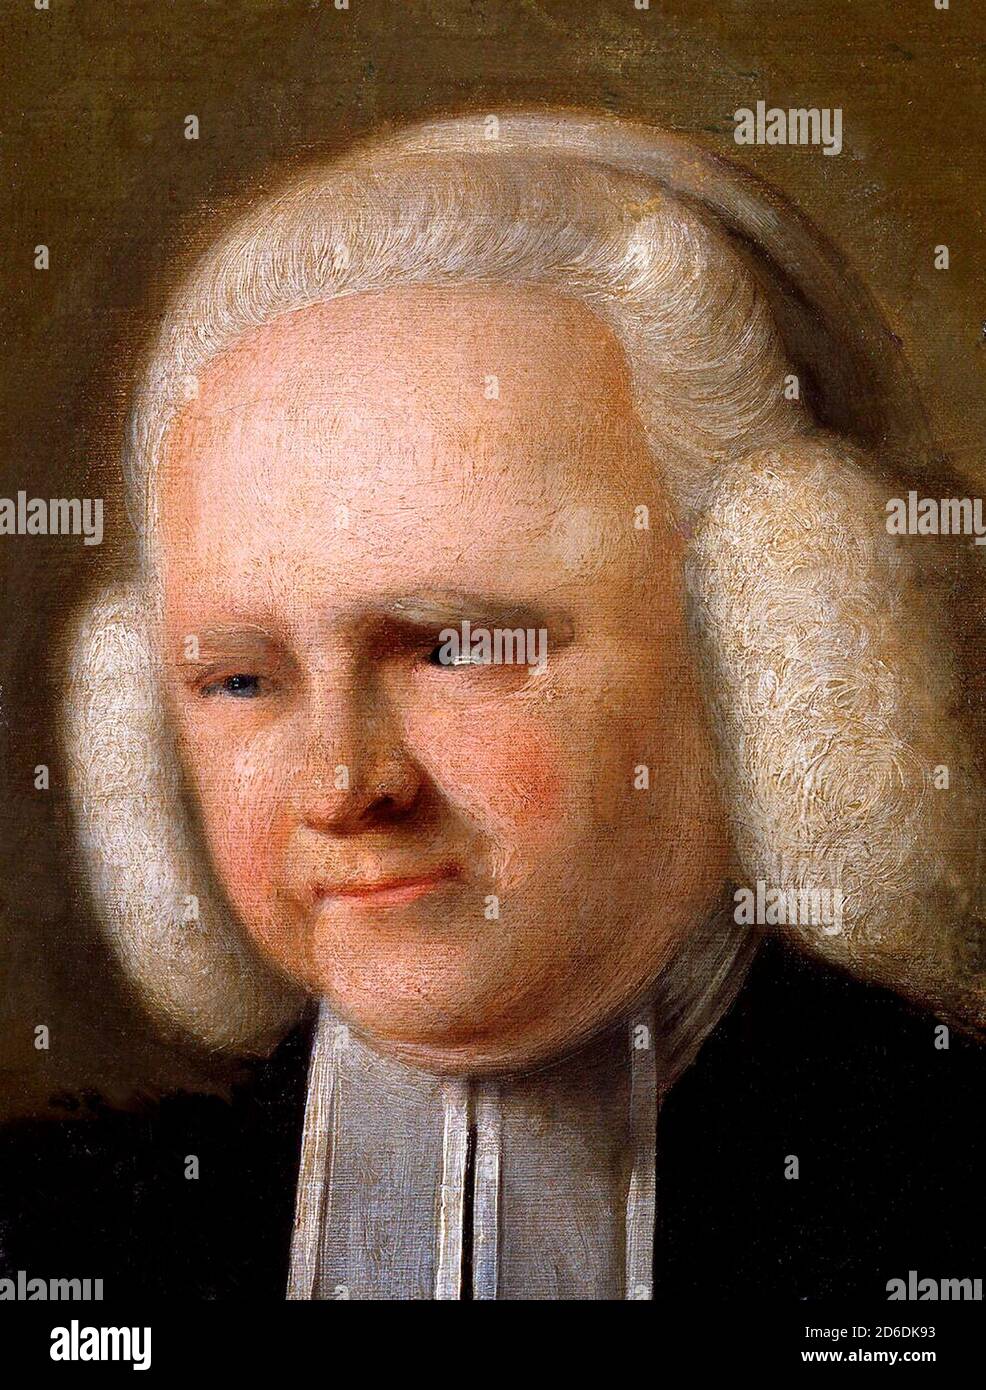 George Whitefield. Retrato del clérigo anglicano inglés, Reverendo George Whitefield (1714-1770), John Russell, 1770. Whitefield fue uno de los fundadores del metodismo y del movimiento evangélico. Foto de stock